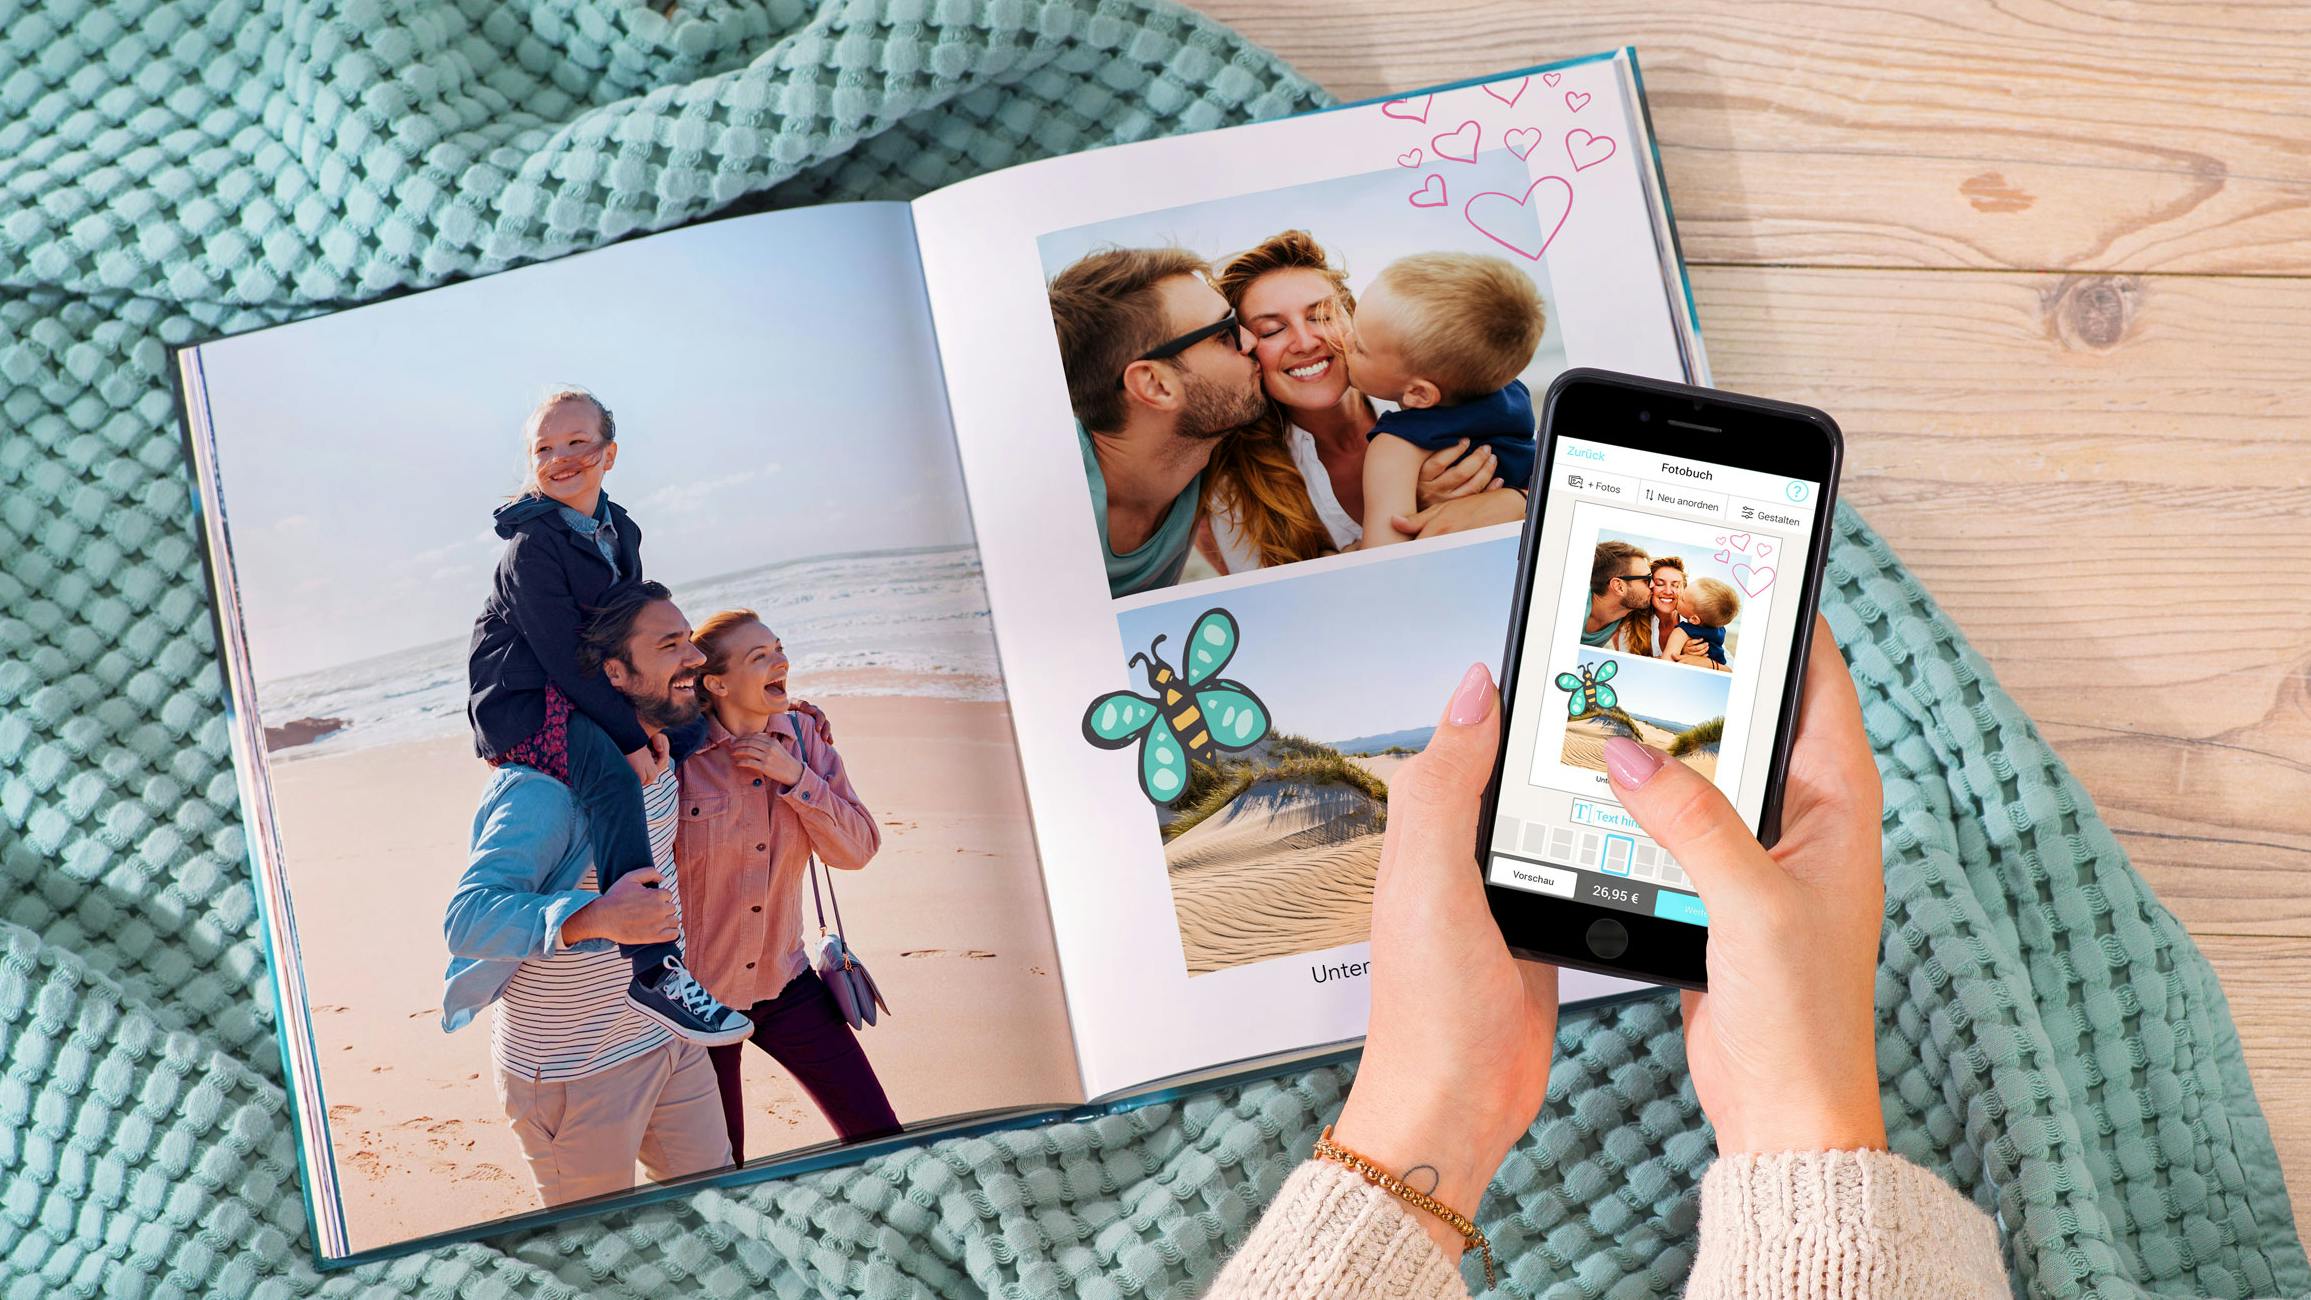 Opengeslagen fotoboek in staand formaat met zomerse foto's en cliparts en twee handen die een smartphone vasthouden